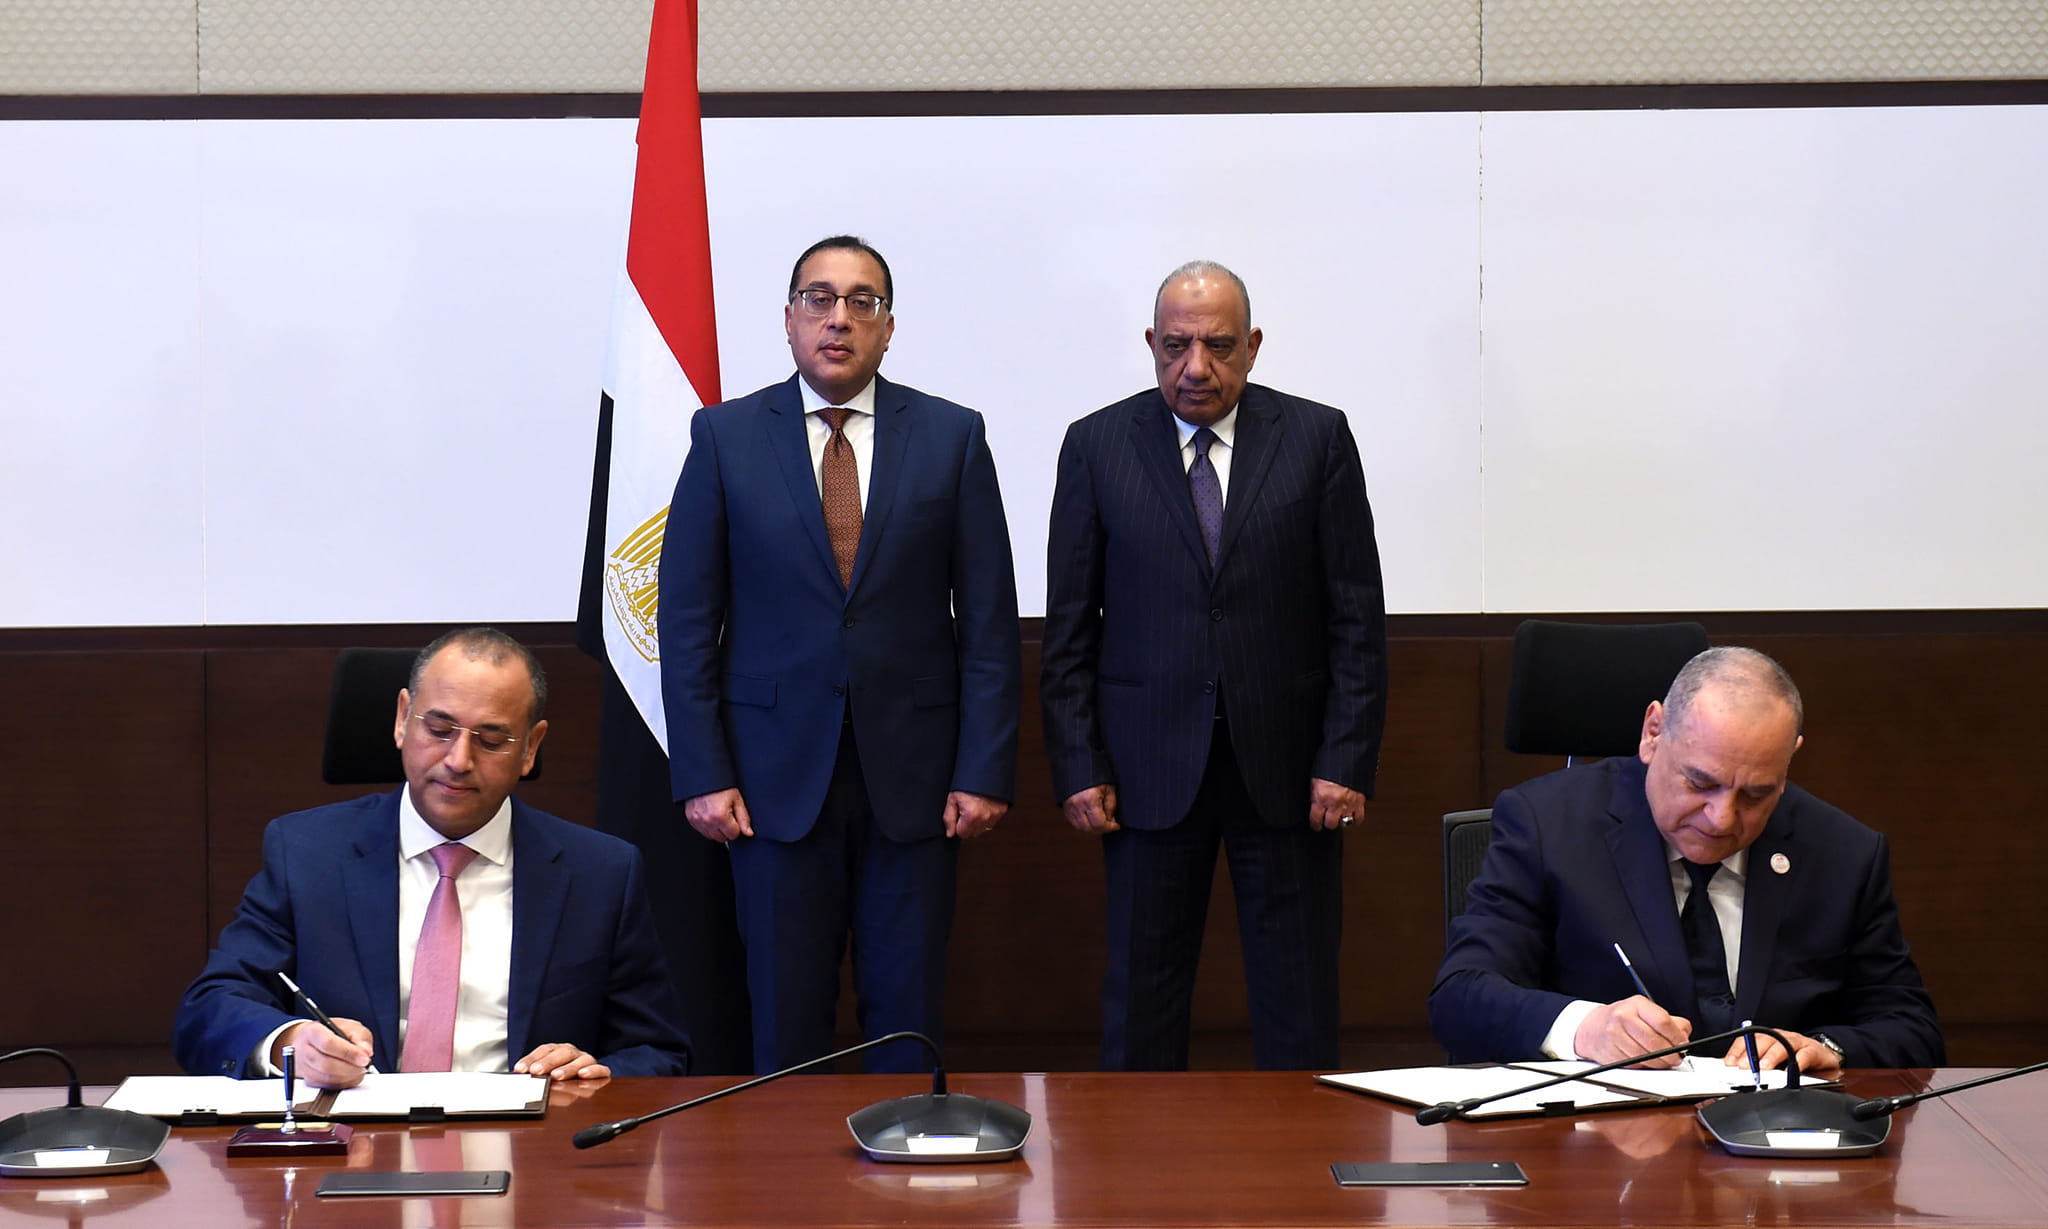 مصطفى مدبولي رئيس الوزراء يشهد توقيع مذكرة تفاهم لتطوير شركة النصر للزجاج والبلور